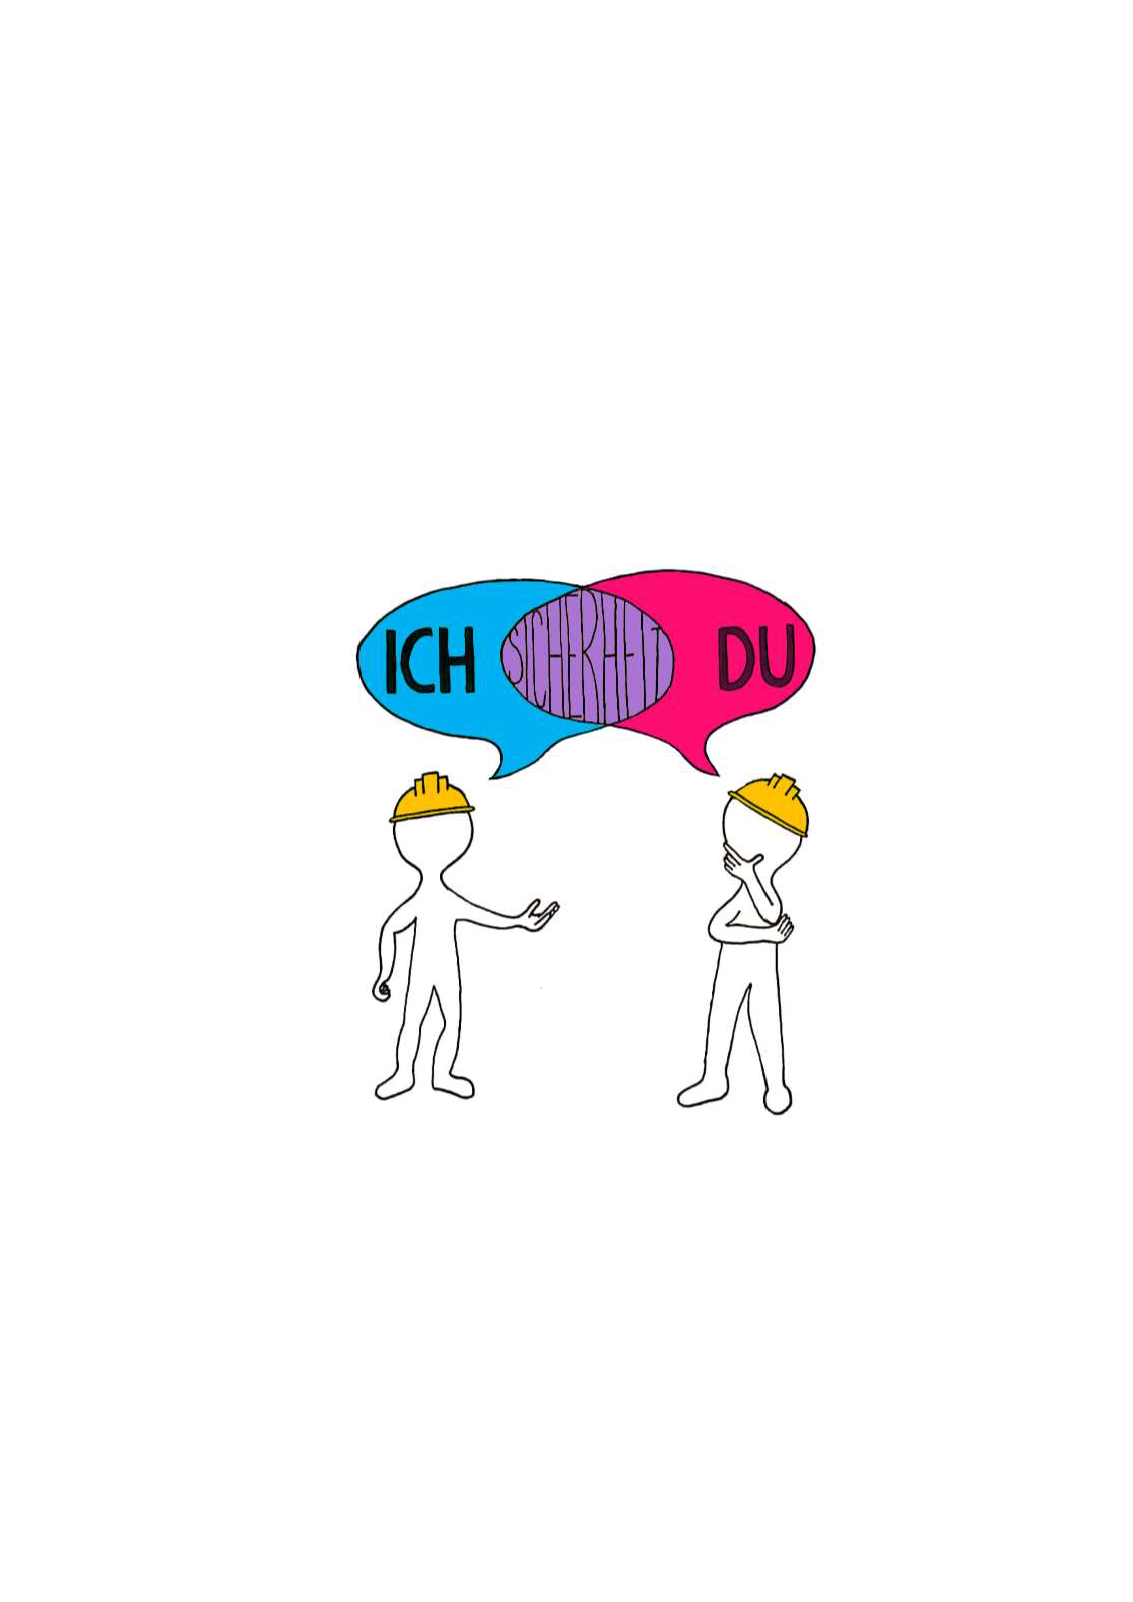 Das Bild zeigt zwei Bauarbeiter, die miteinander reden. Beide Sprechblasen überschneiden sich und stellen im Bereich der Überschneidung das Wort Sicherheit dar. Die linke Sprechblase zeigt das Wort "Ich" und die rechte Sprechblase das Wort "Du".